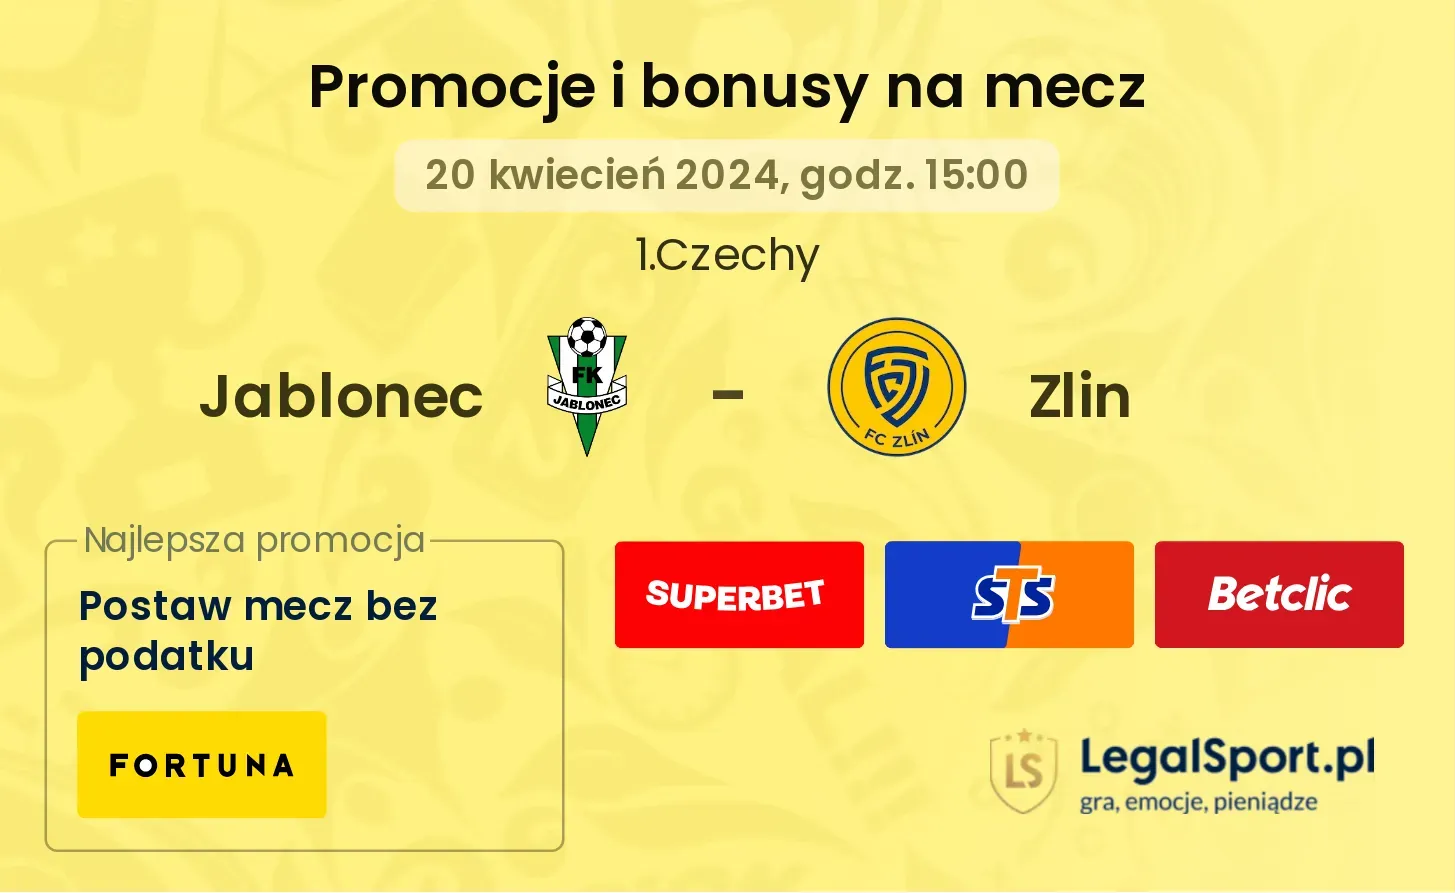 Jablonec - Zlin promocje bonusy na mecz